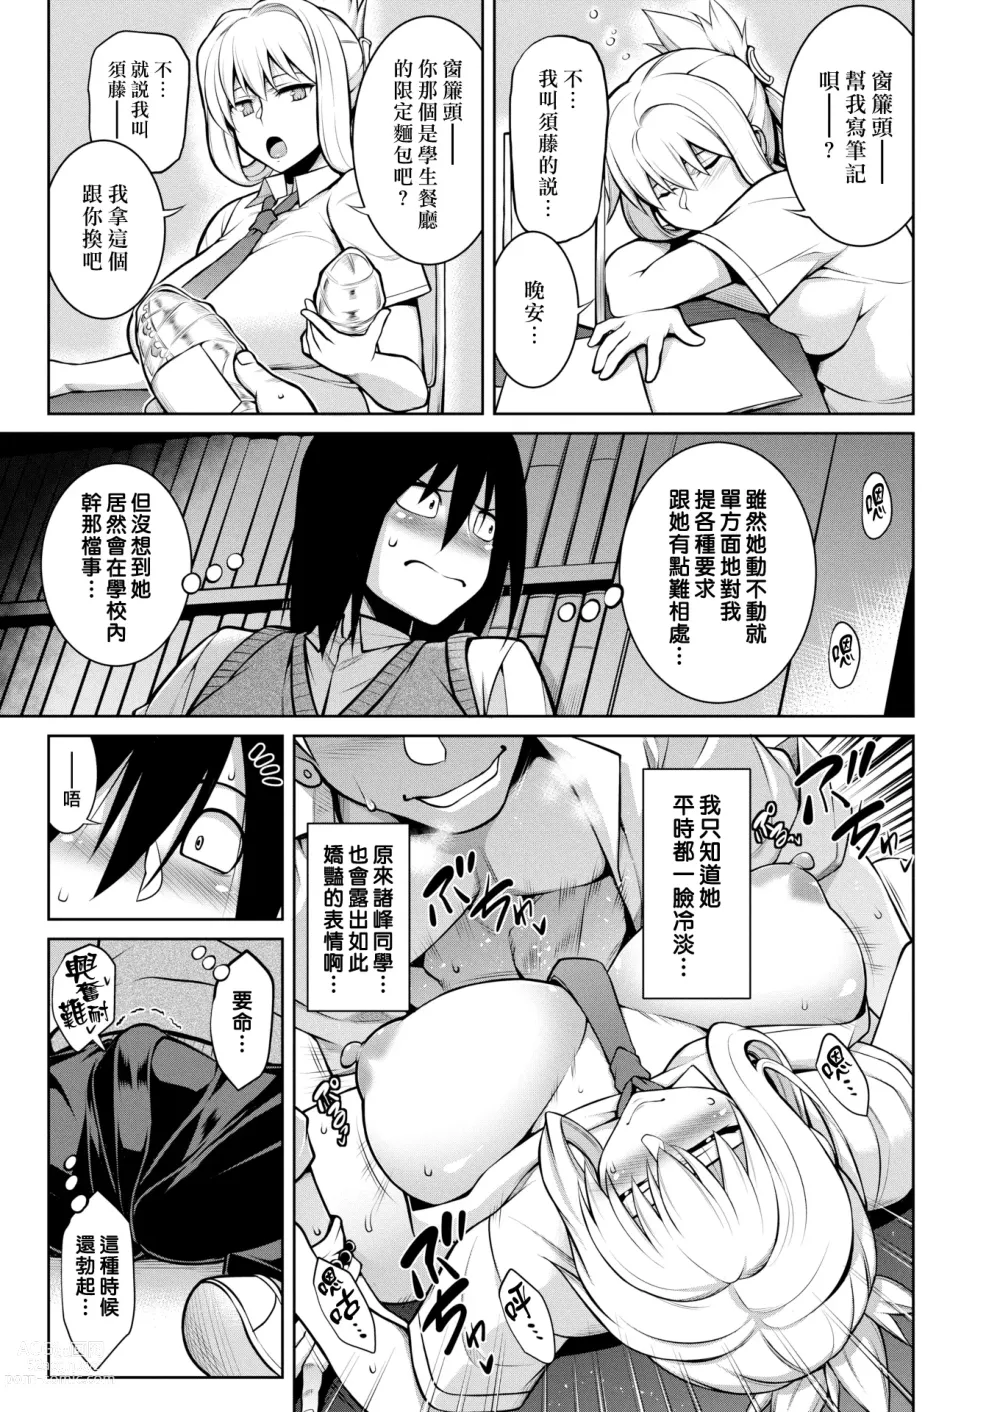 Page 3 of doujinshi 僕が彼女にNOと言えない理由